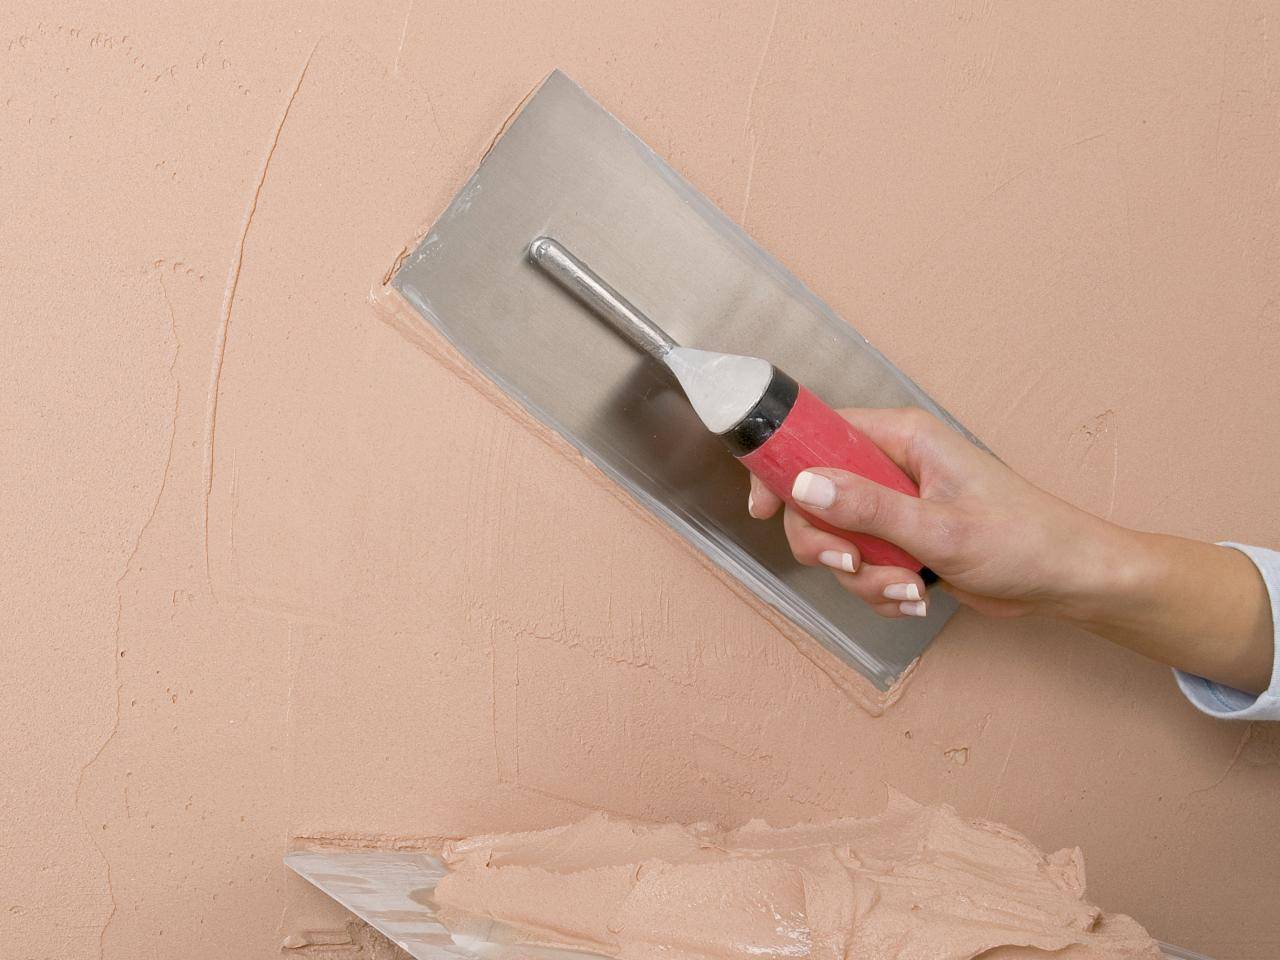 Шпаклевка стен под покраску (финишная) - как правильно шпаклевать